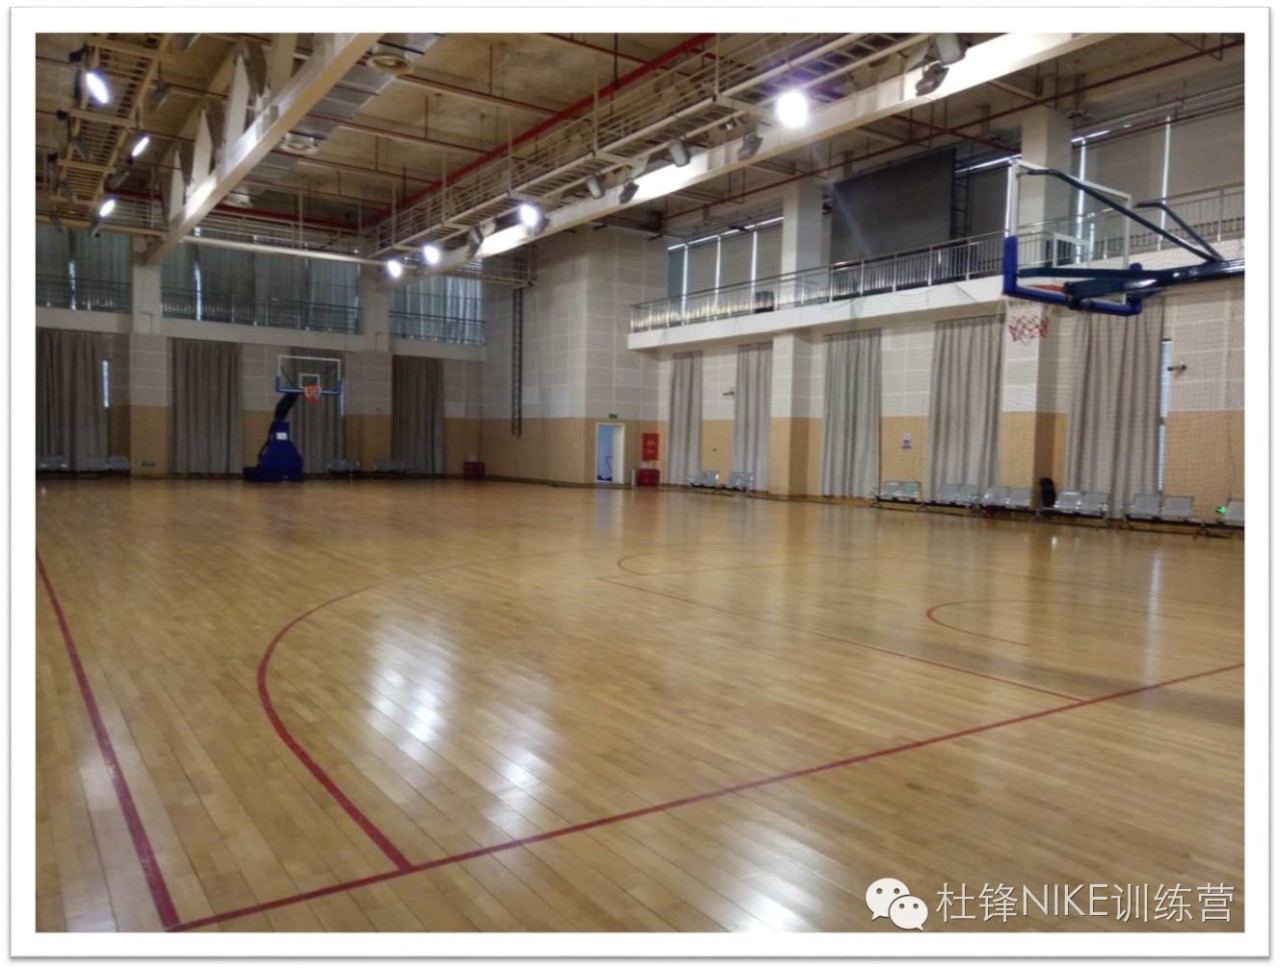 杜锋NIKE训练营|杜锋北京篮球冬令营吹响集结